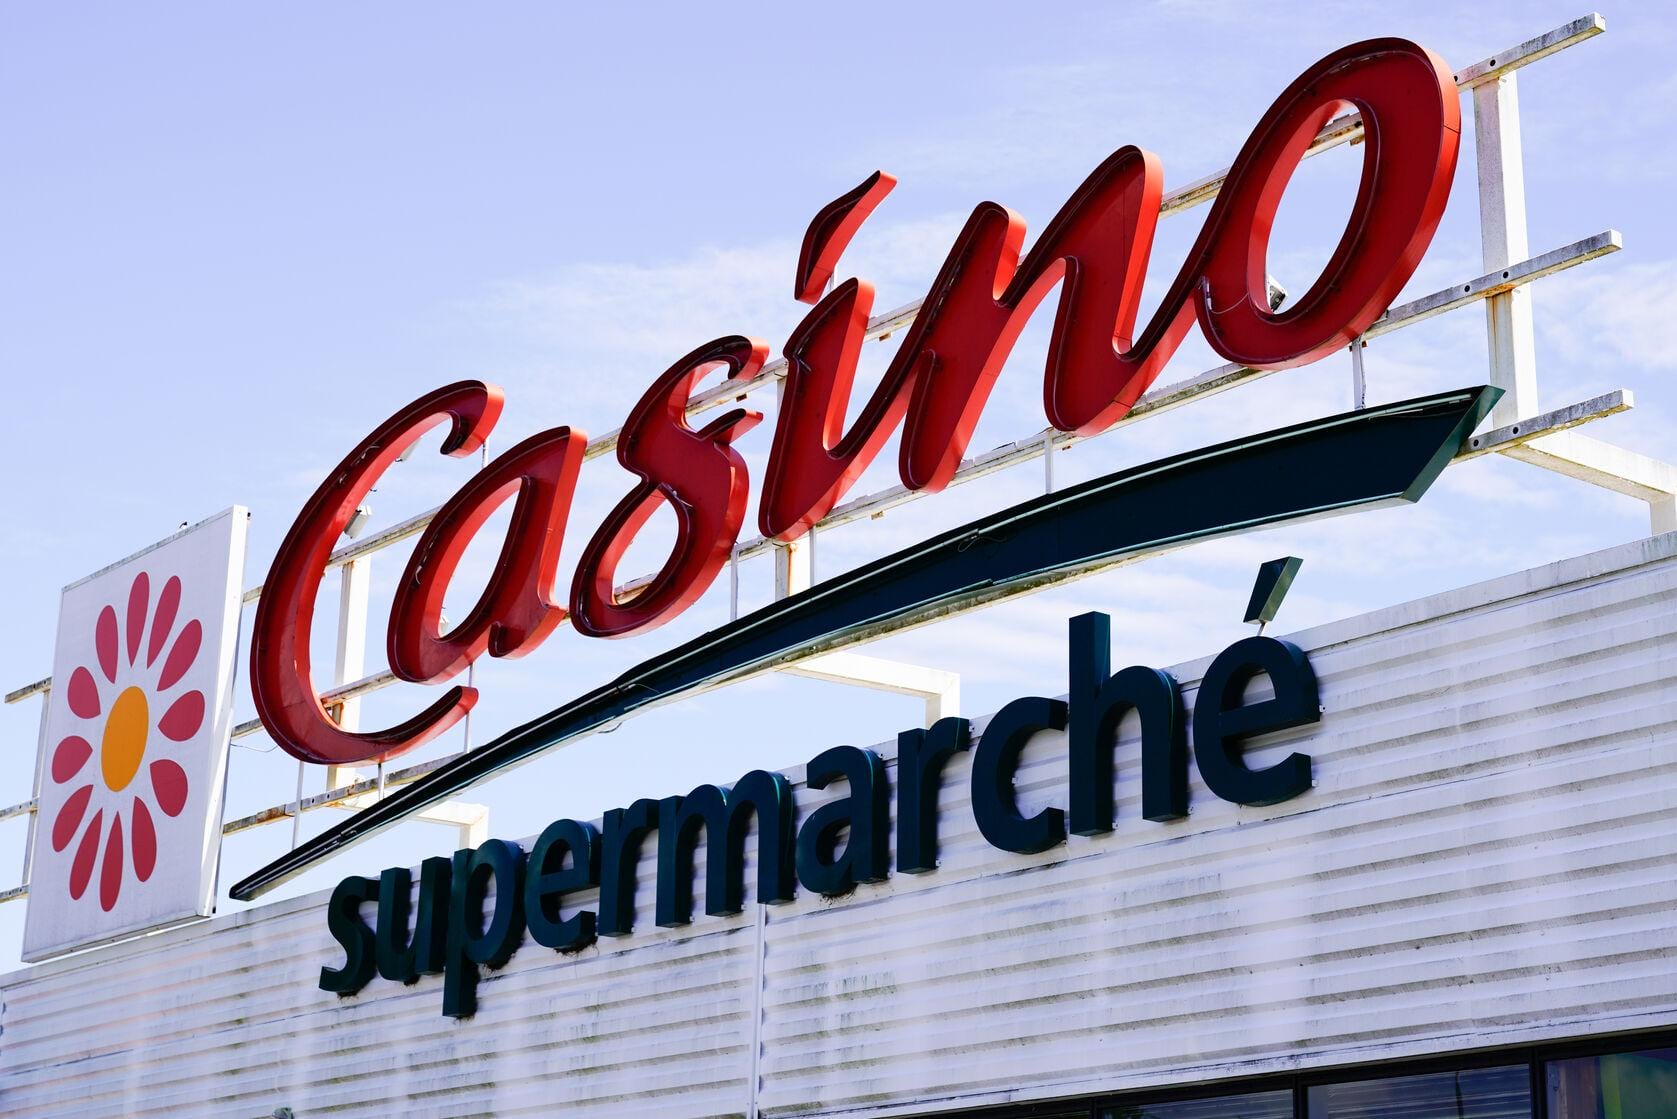 Les Enseignes Casino reçoivent le label ‘Enseigne Responsable”.